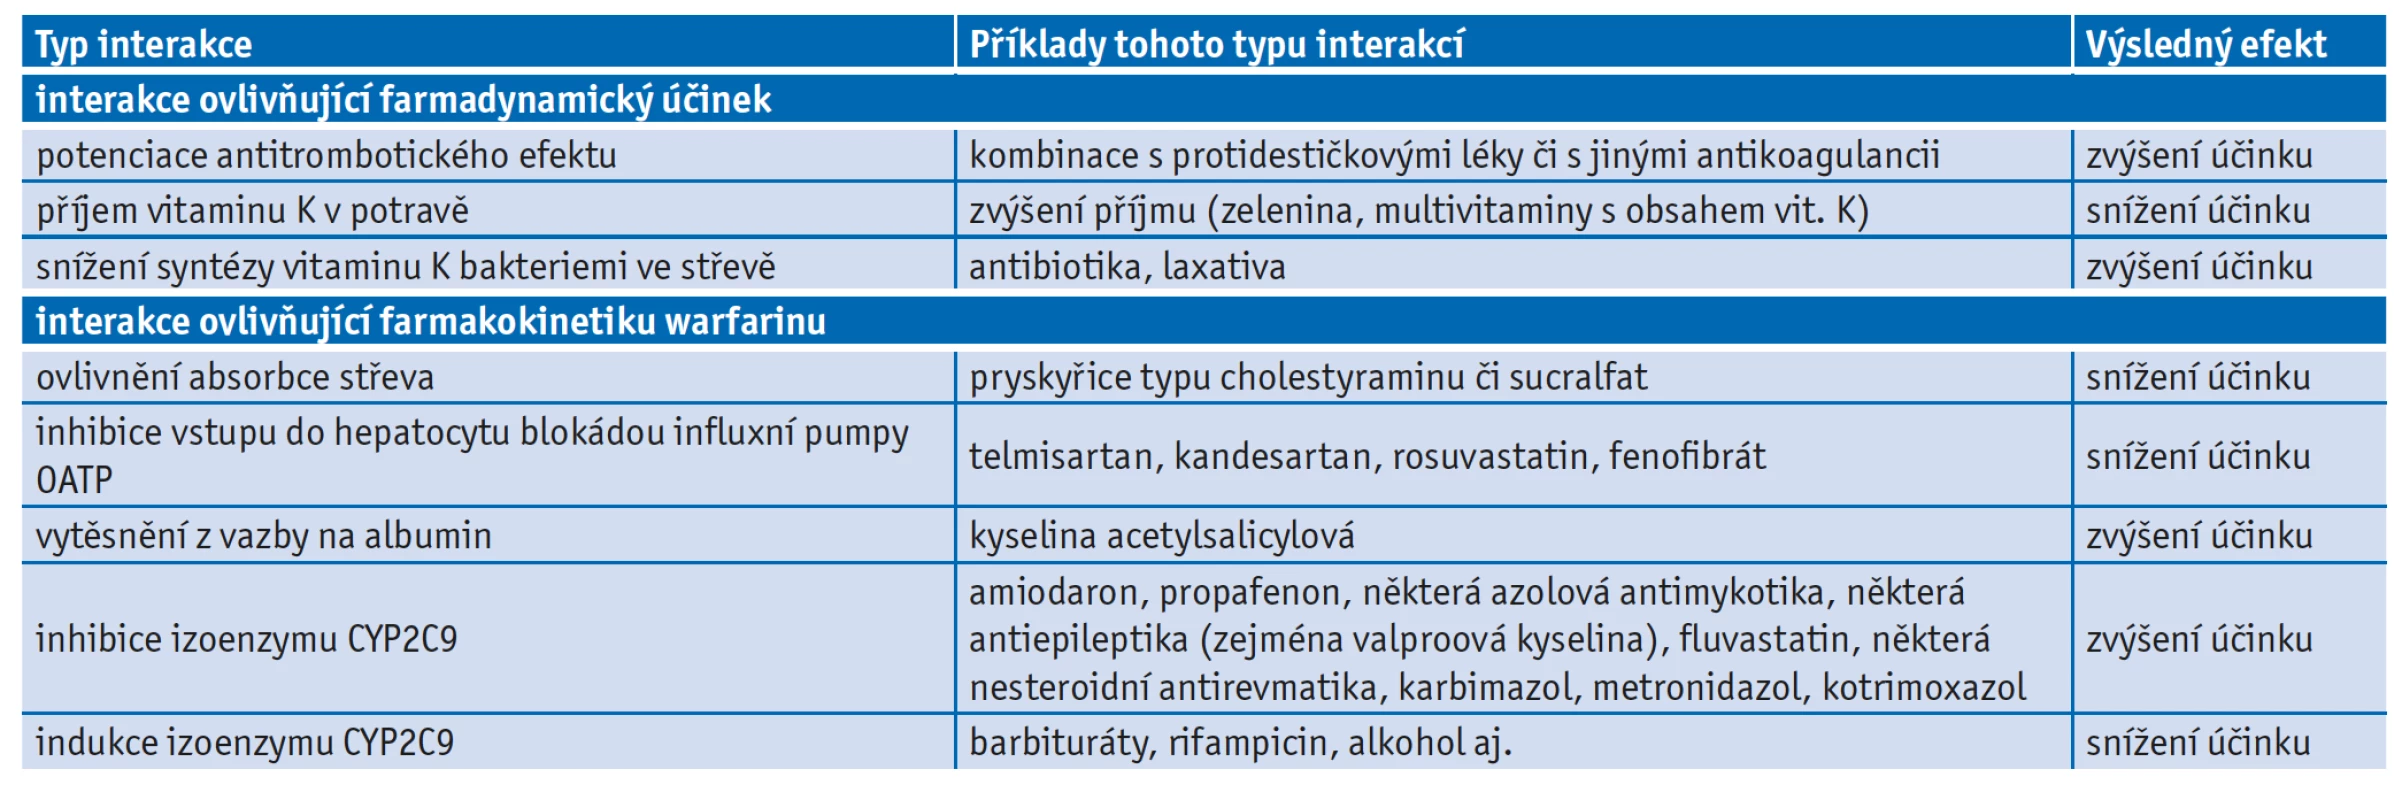 Interakce ovlivňující farmakodynamický a farmakokinetický účinek warfarinu(8)